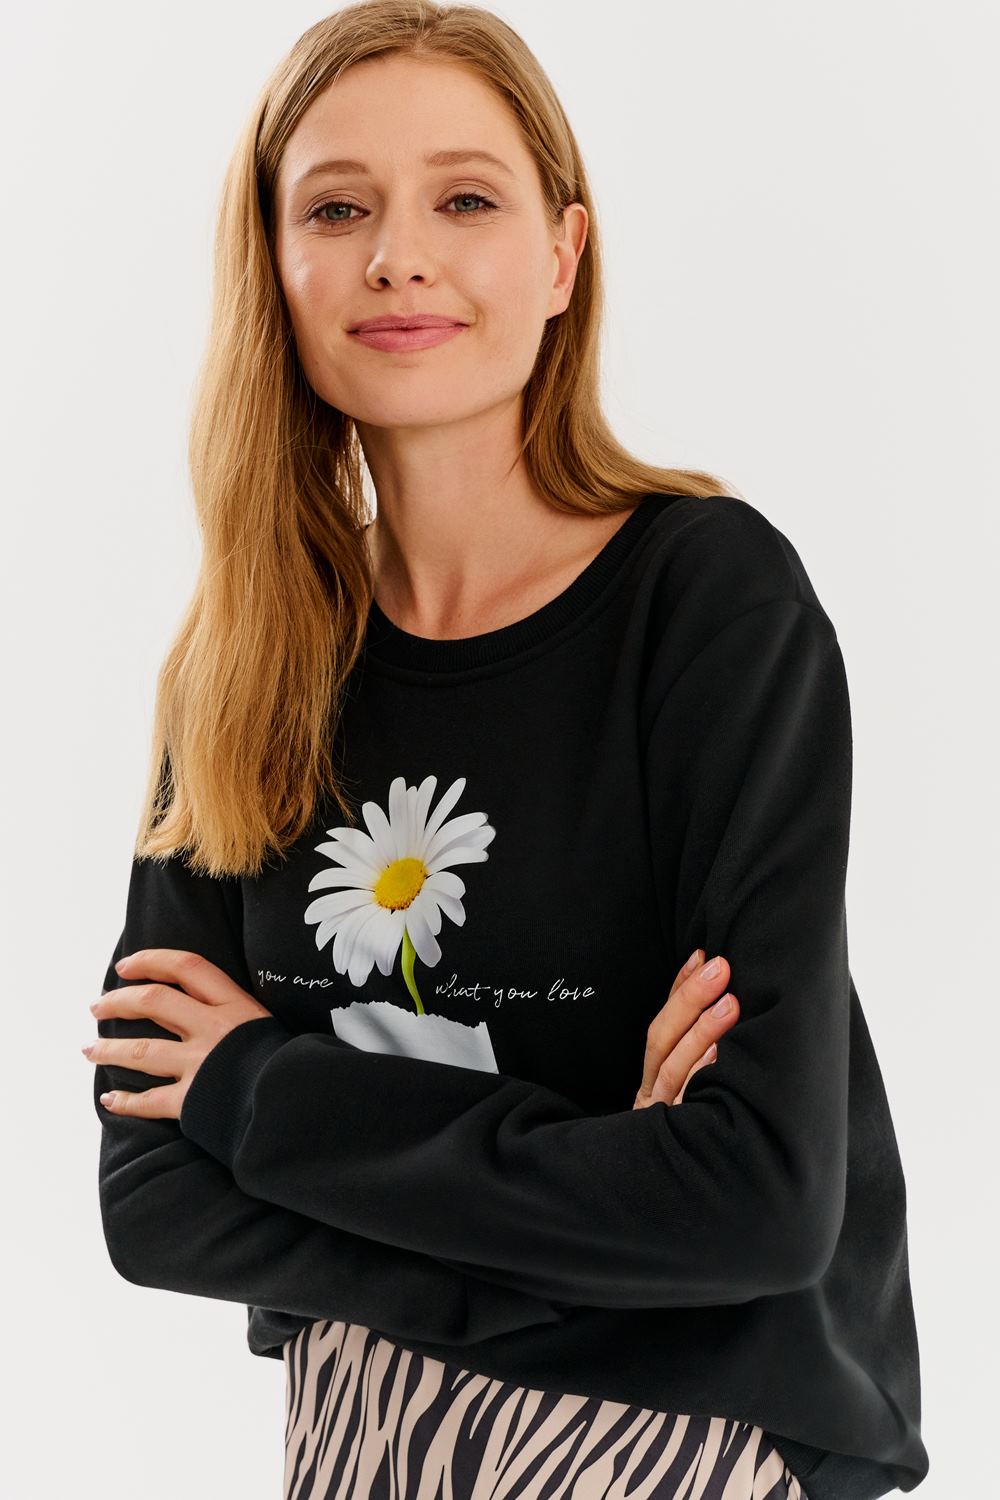 Daisy Jane sweatshirt